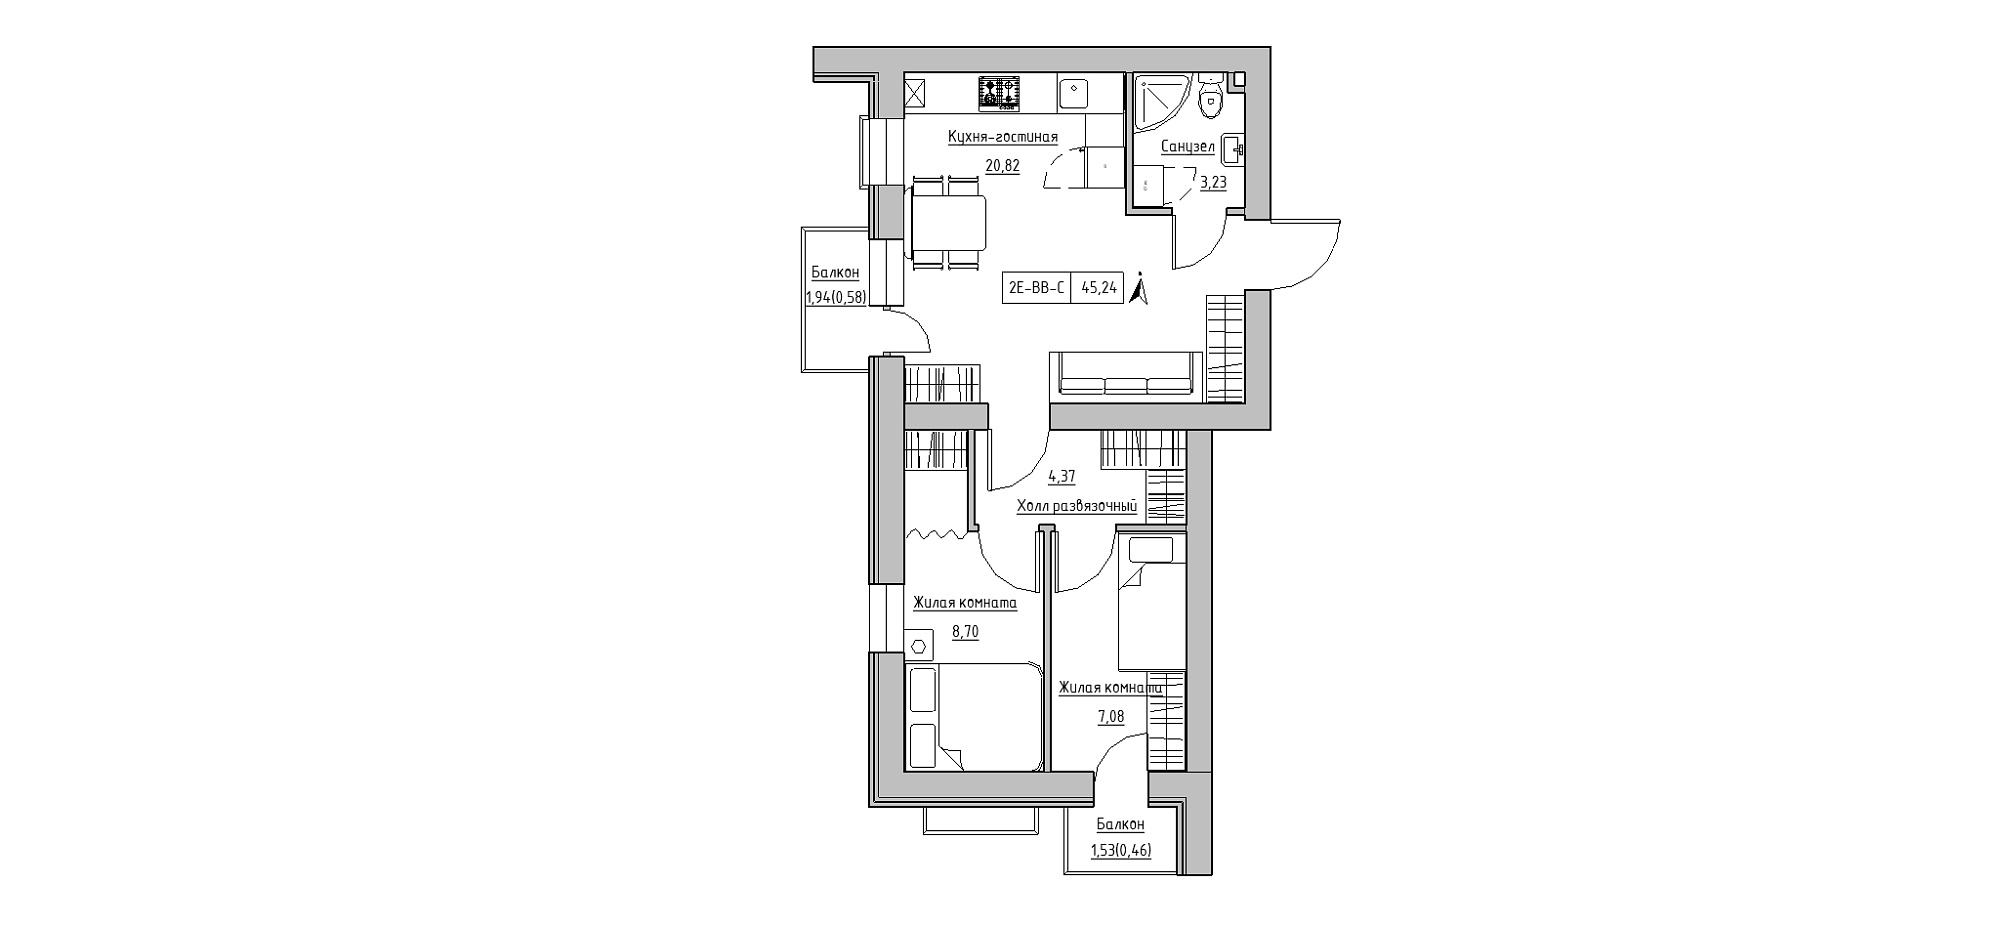 Планування 2-к квартира площею 45.24м2, KS-020-05/0011.